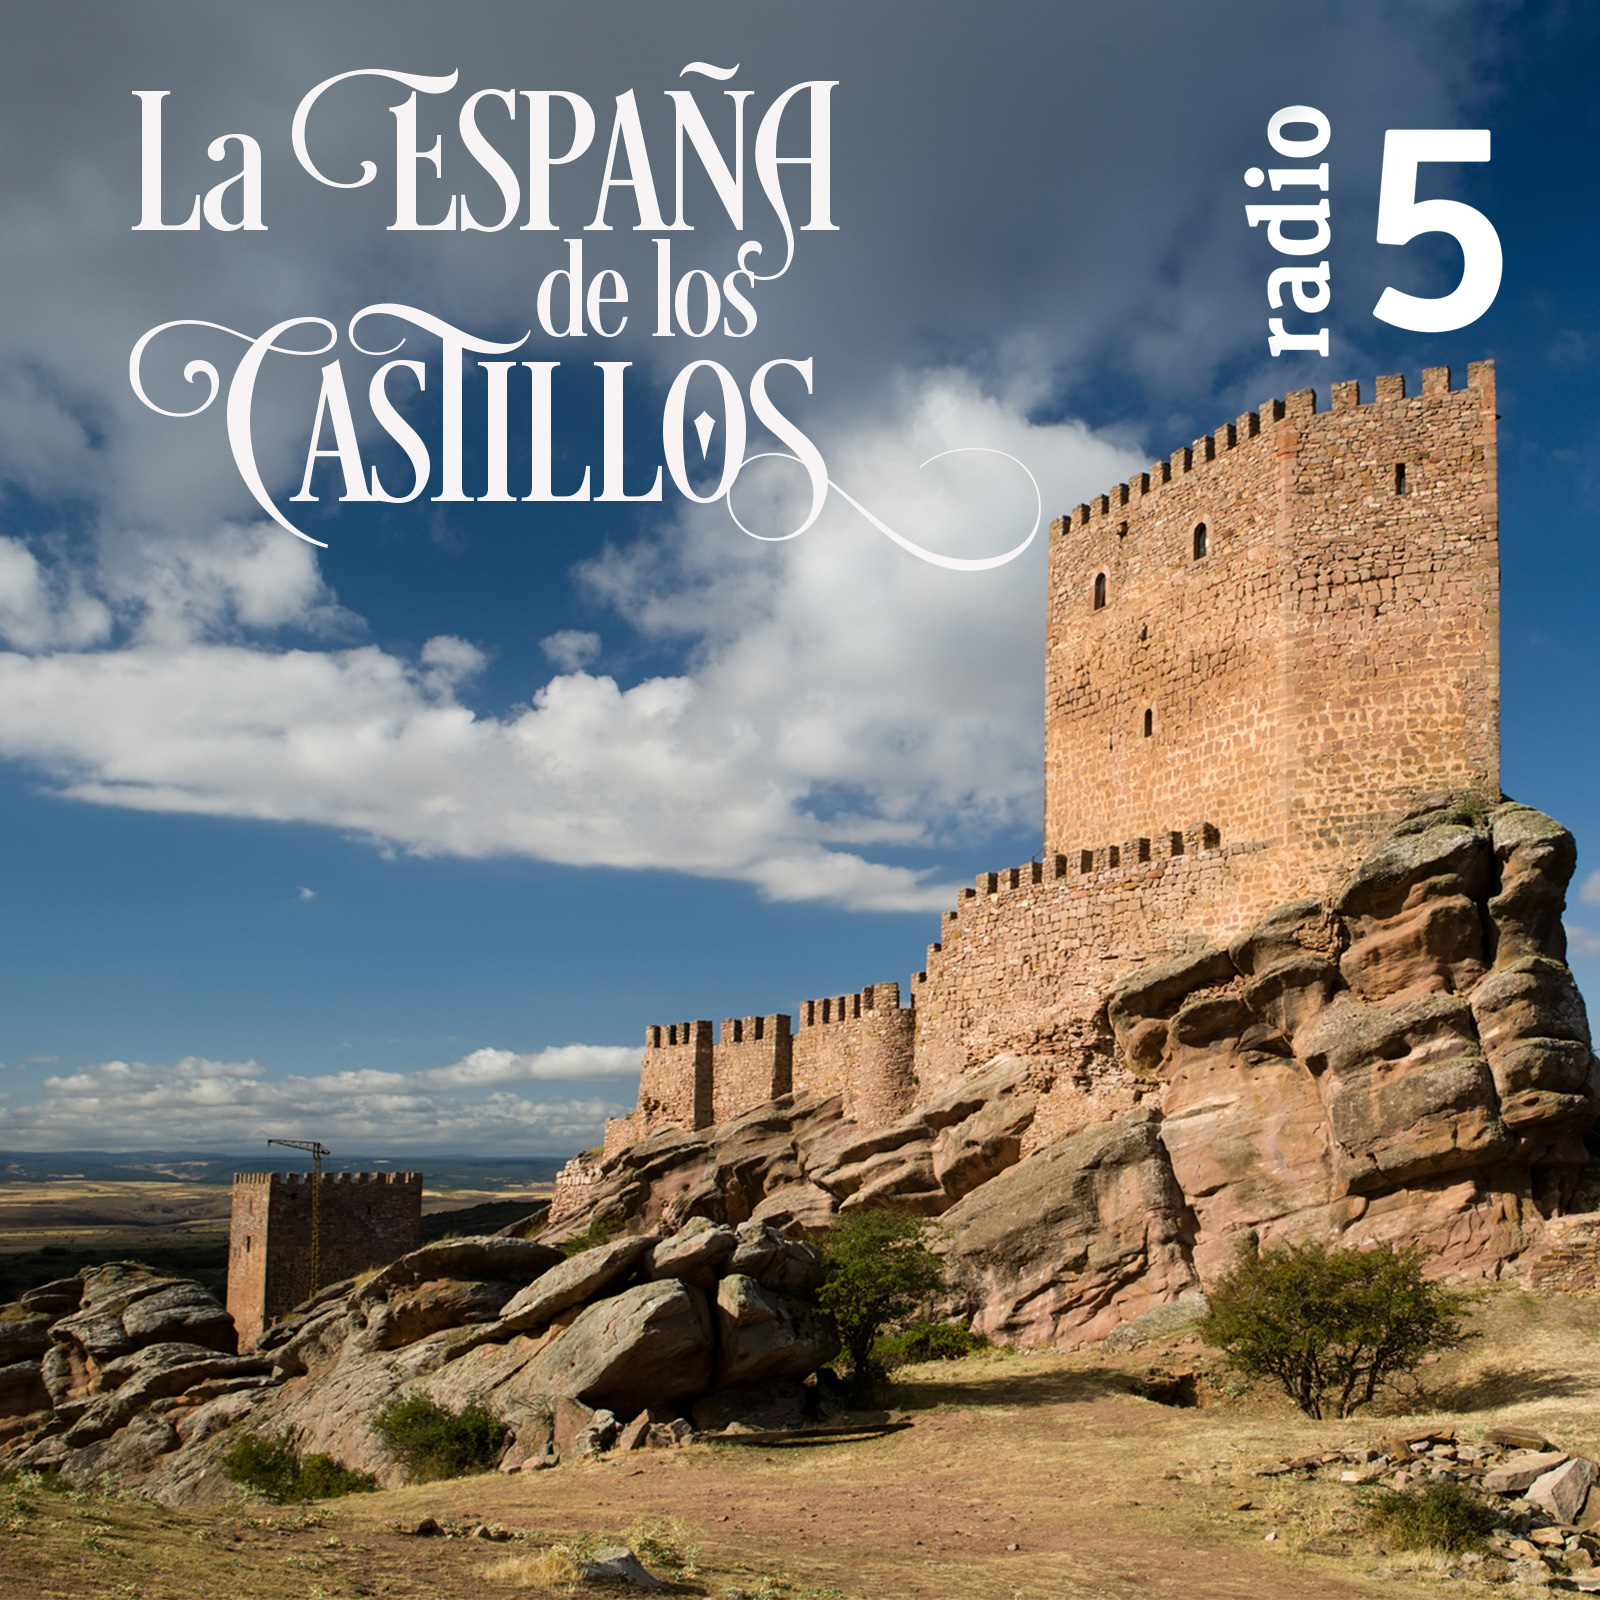 La España de los castillos - Villanueva del fresno - 27/07/19